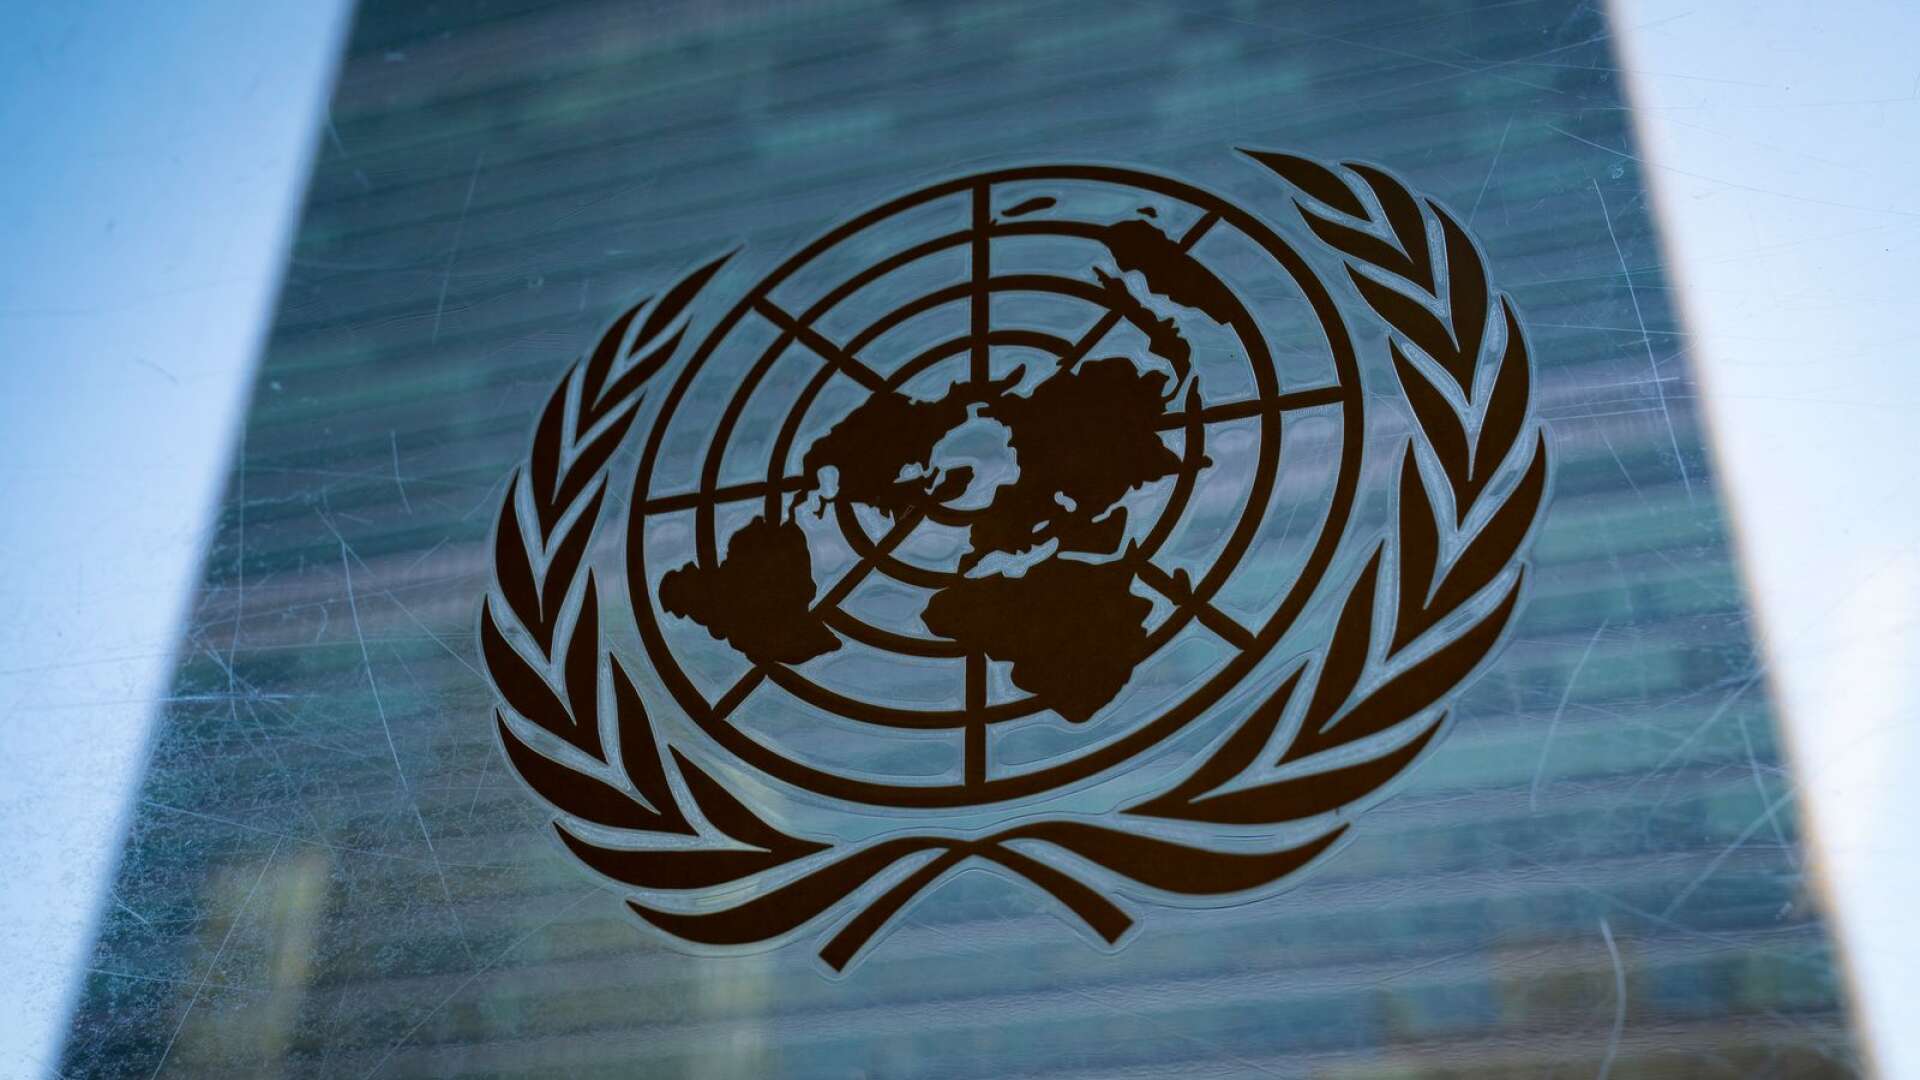 FN har gett världen en omfattande katalog över mänskliga rättigheter och är unikt som mötesplats, skriver Annelie Börjesson med flera.